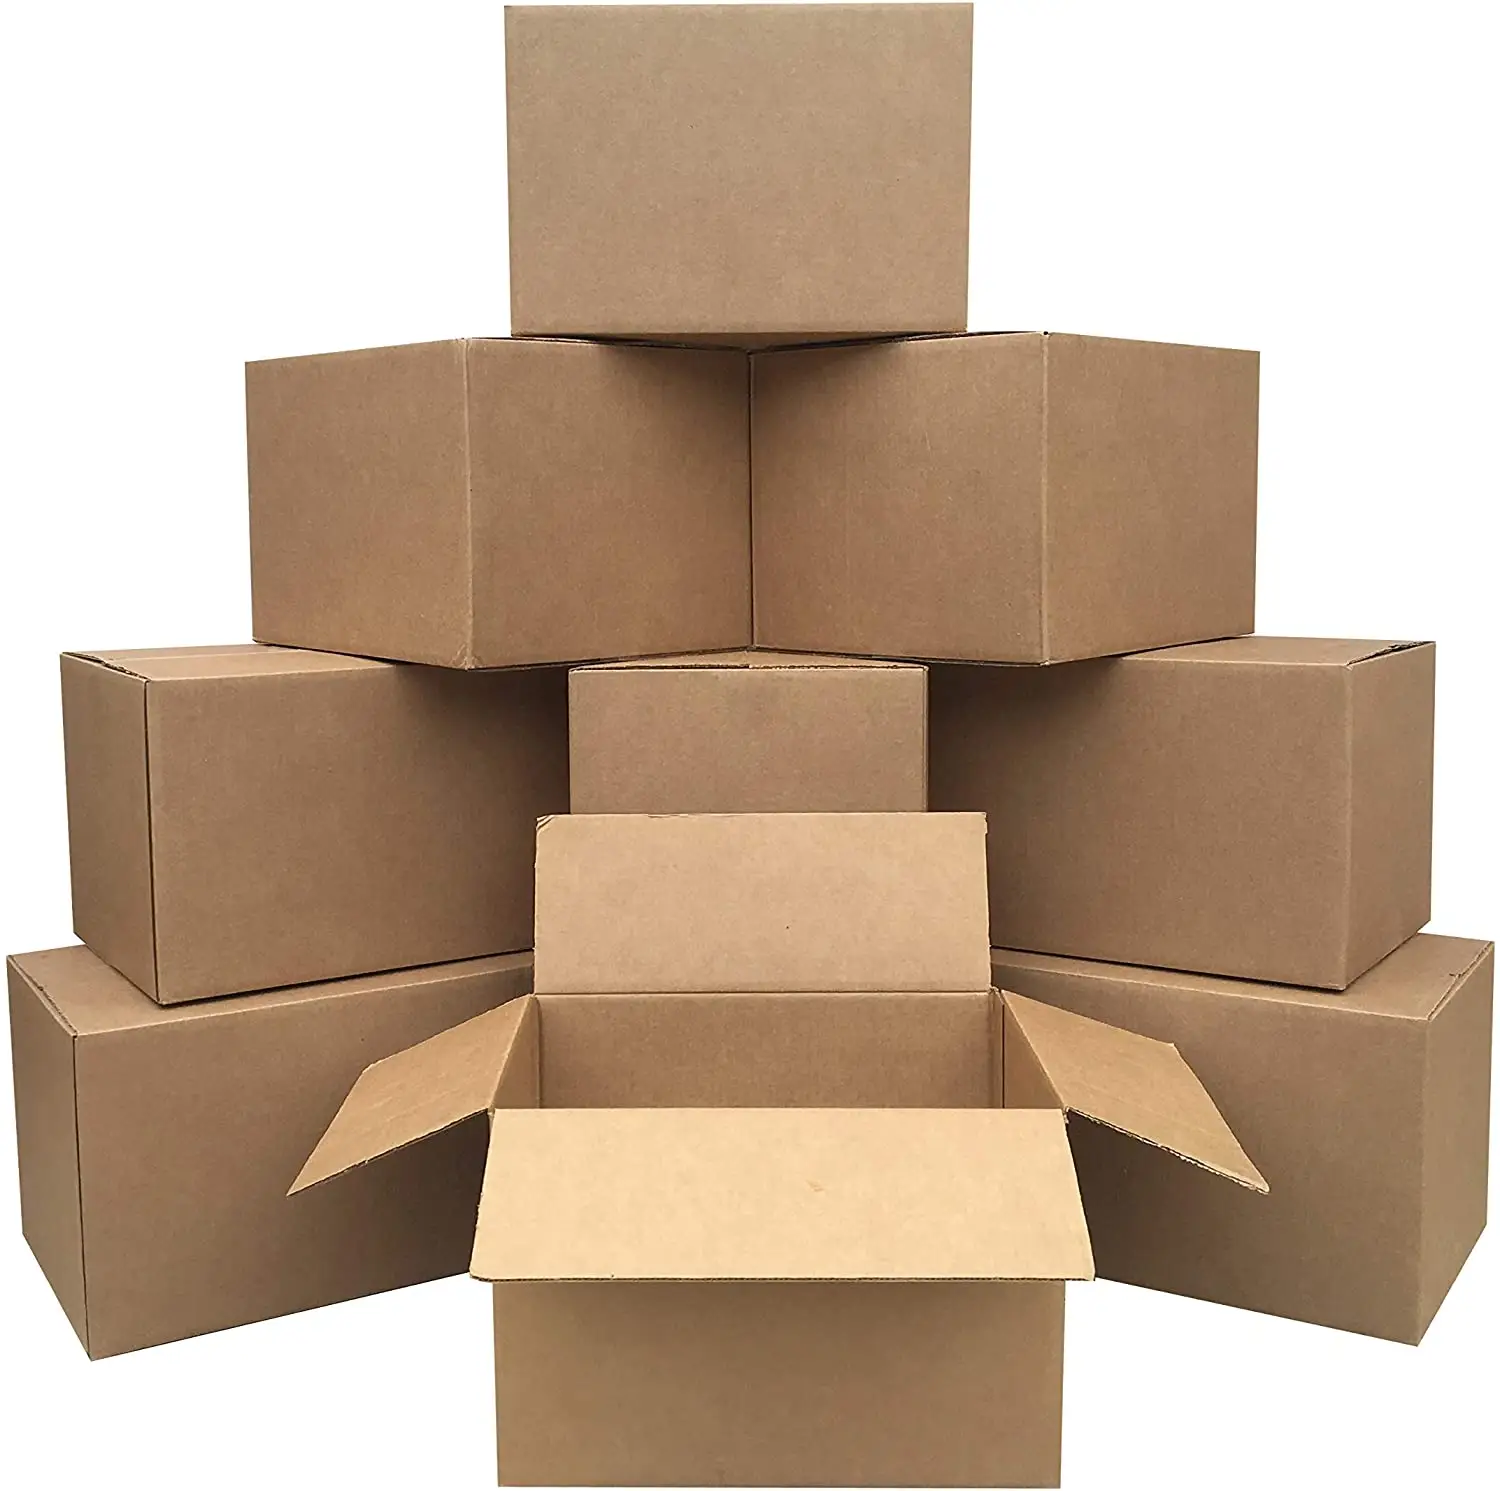 Embalaje de cartón personalizado, cajas de envío en movimiento, cajas de cartón corrugado, caja de correo para embalaje, entrega de cartón